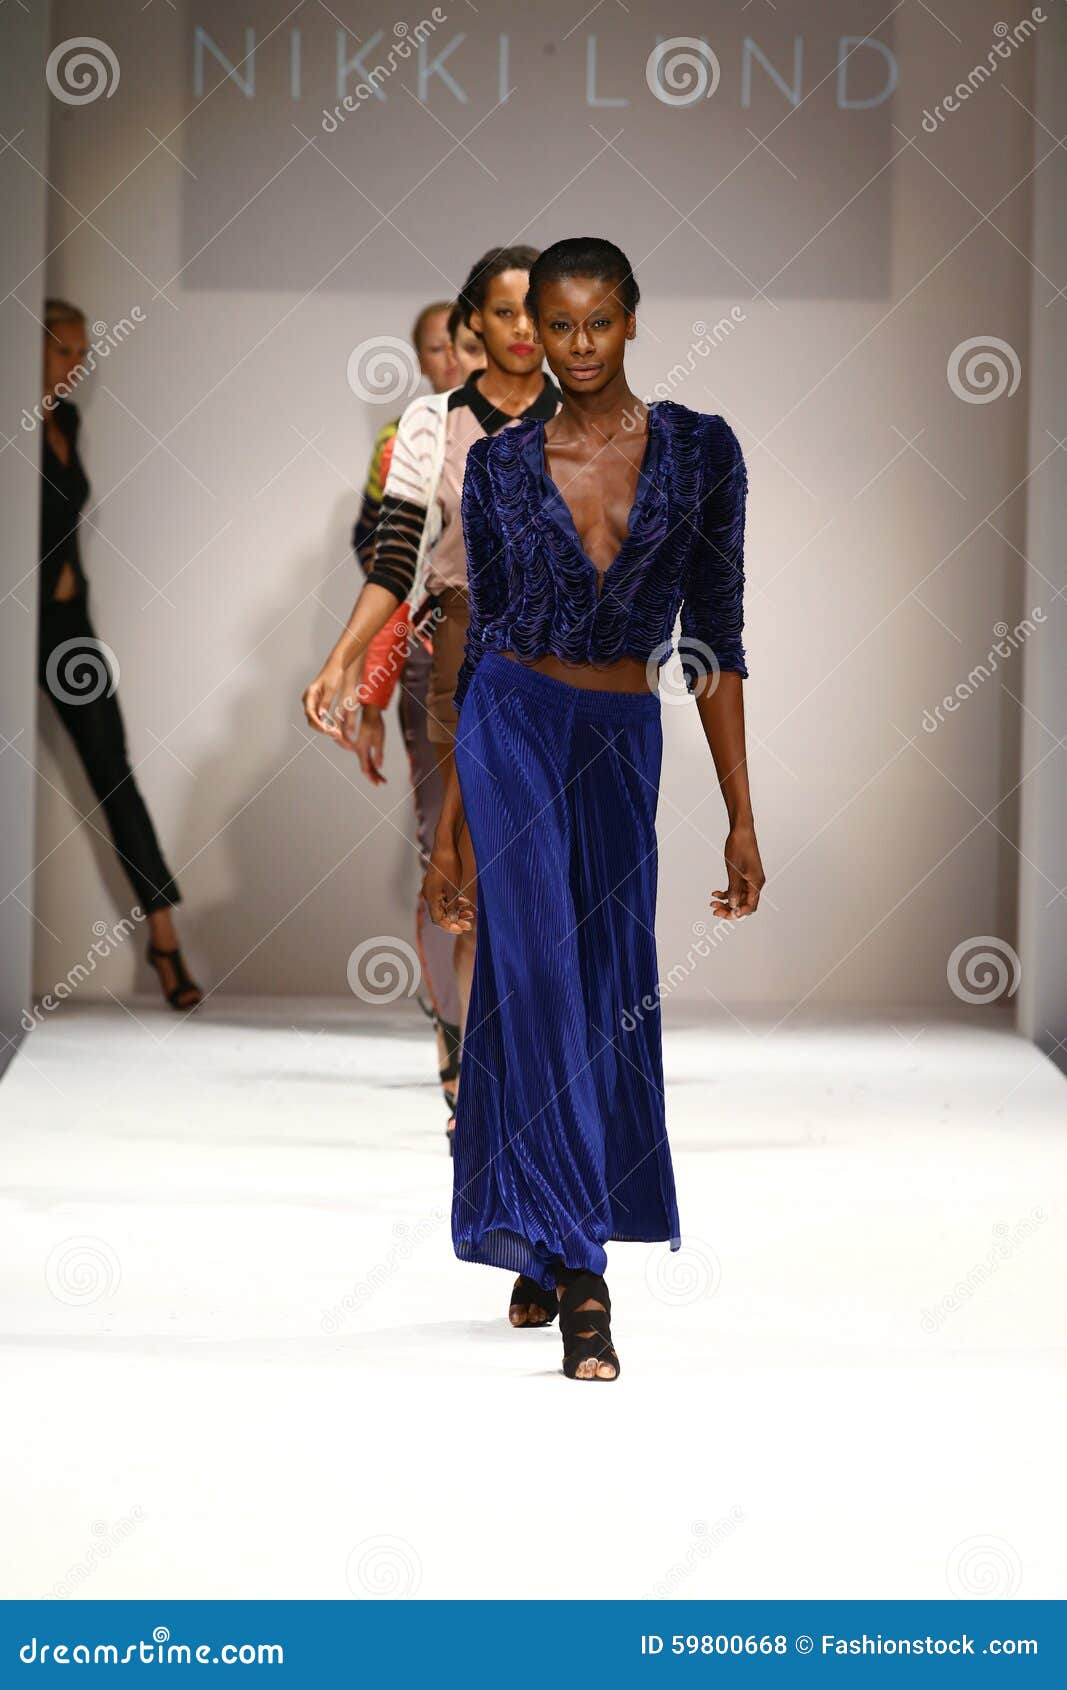 NEW YORK, NY - 10 SETTEMBRE: Passeggiata dei modelli il finale della pista alla sfilata di moda di Nikki Lund durante la settimana 2016 di modo di New York della primavera a Gotham Hall il 10 settembre 2015 in New York